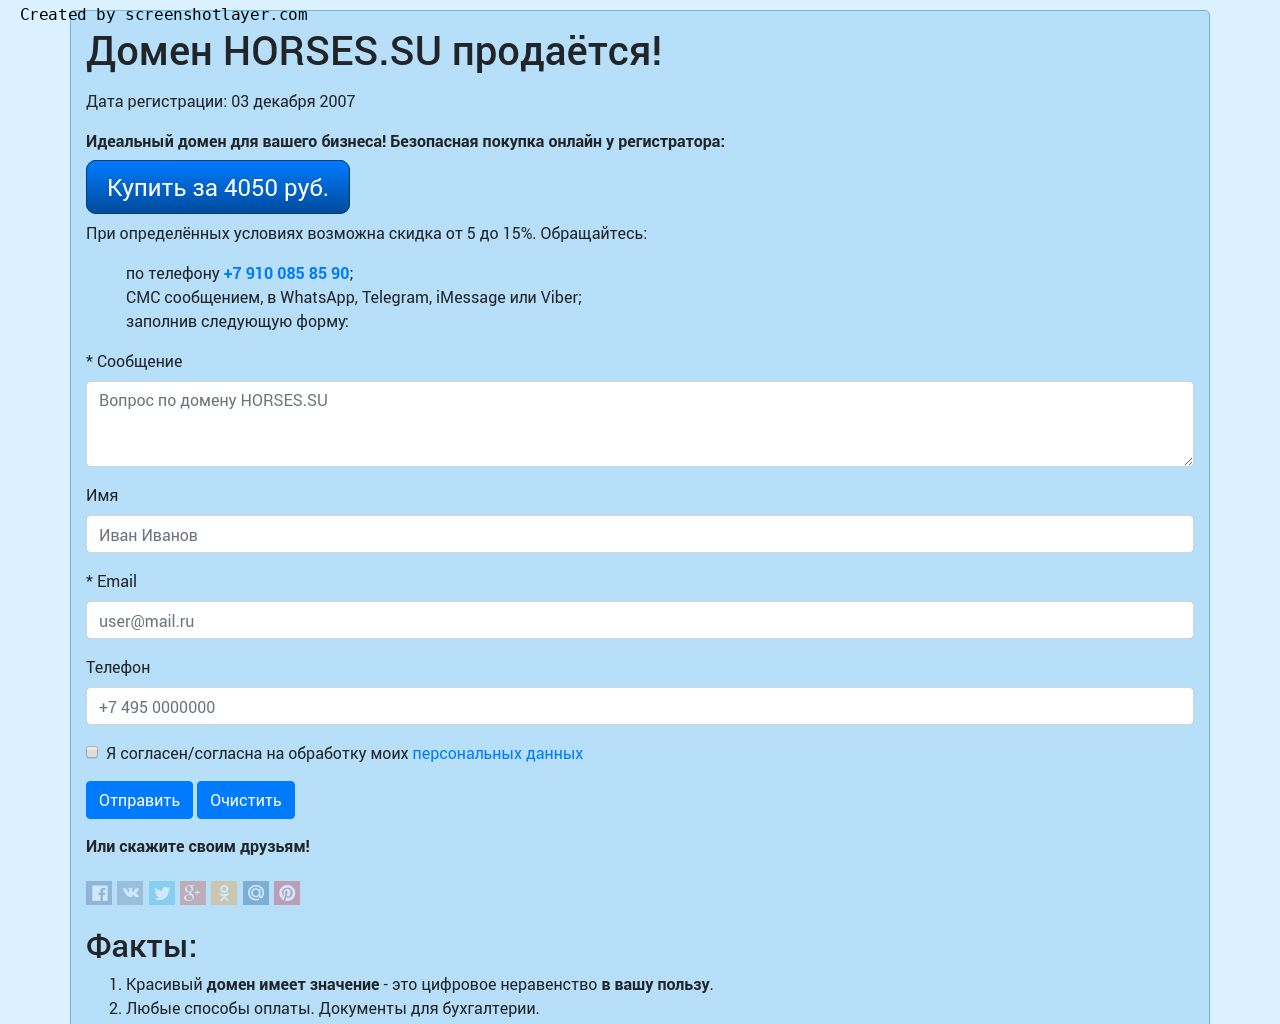 Изображение сайта horses.su в разрешении 1280x1024